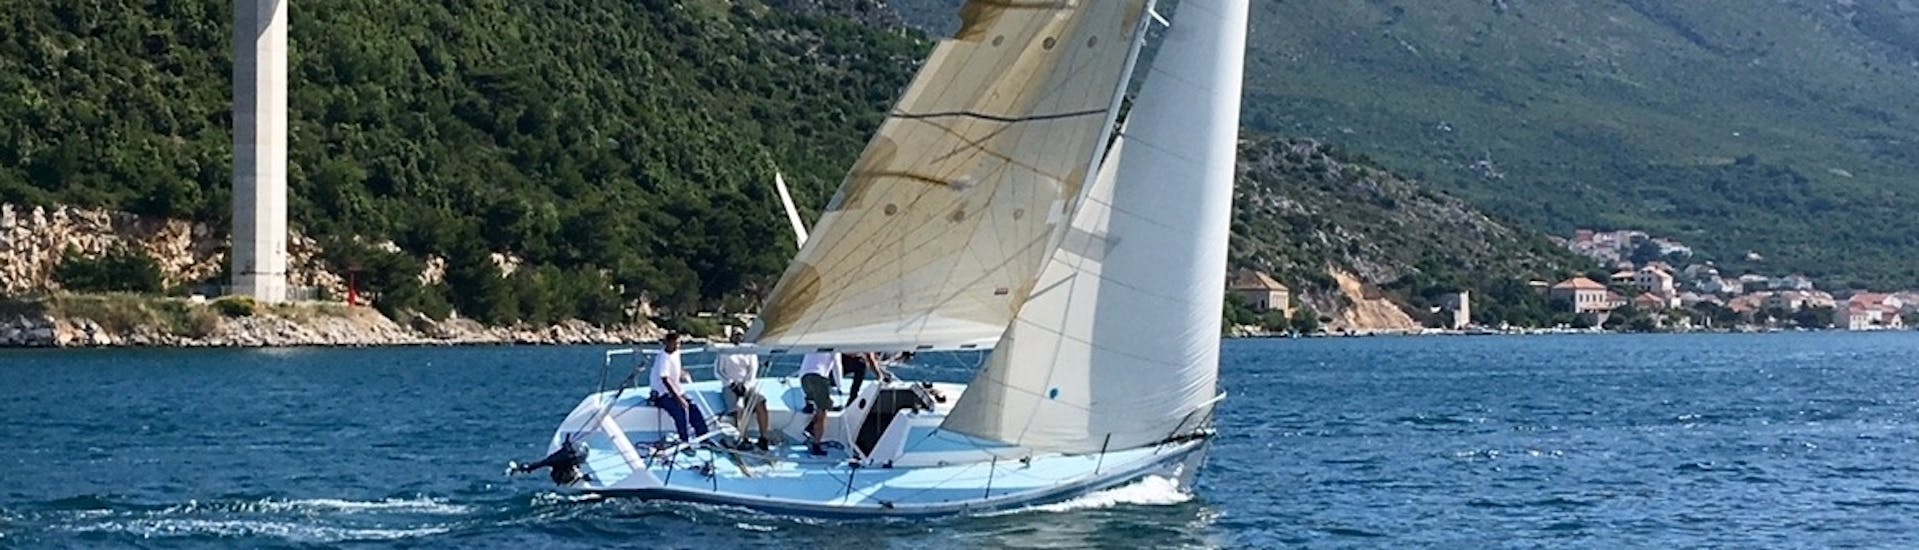 Paseo privado en barco por 3 islas desde Dubrovnik.